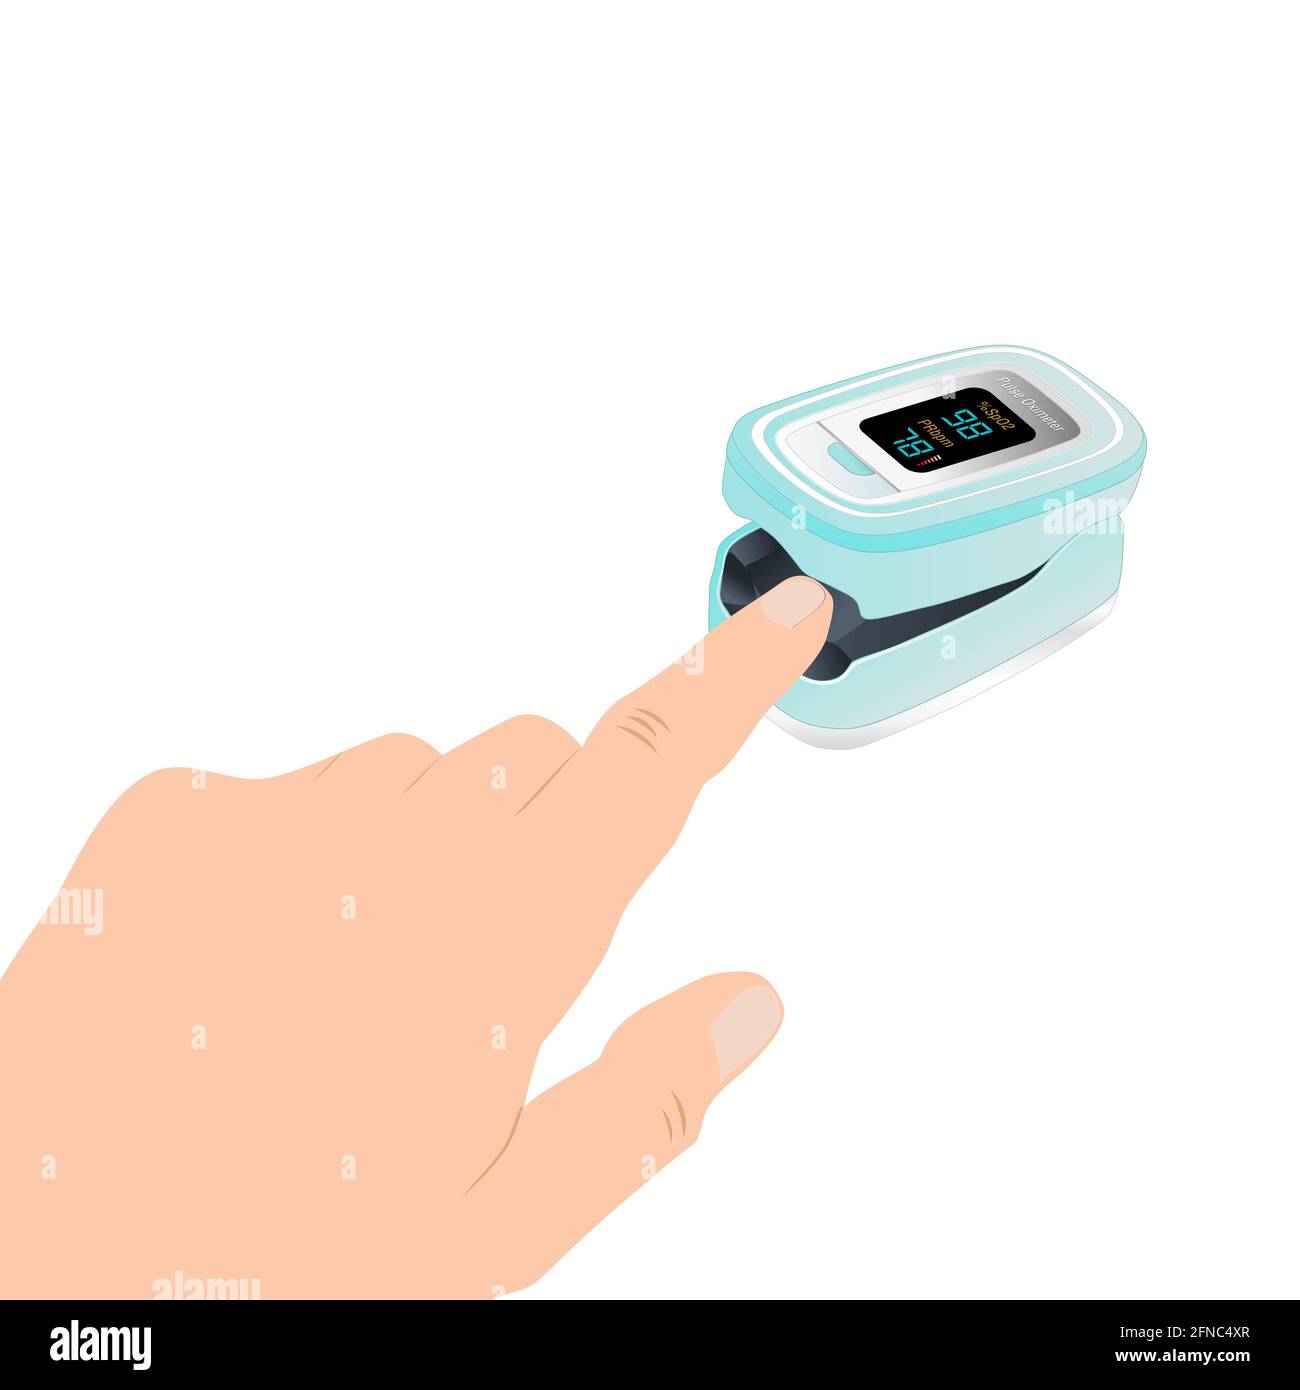 Pulsoximeter am Finger. Blutsauerstoffsättigungsmonitor mit Herzfrequenzerkennung, Symbol für medizinische Geräte, isoliert auf weißem Hintergrund. Gesundheit c Stock Vektor